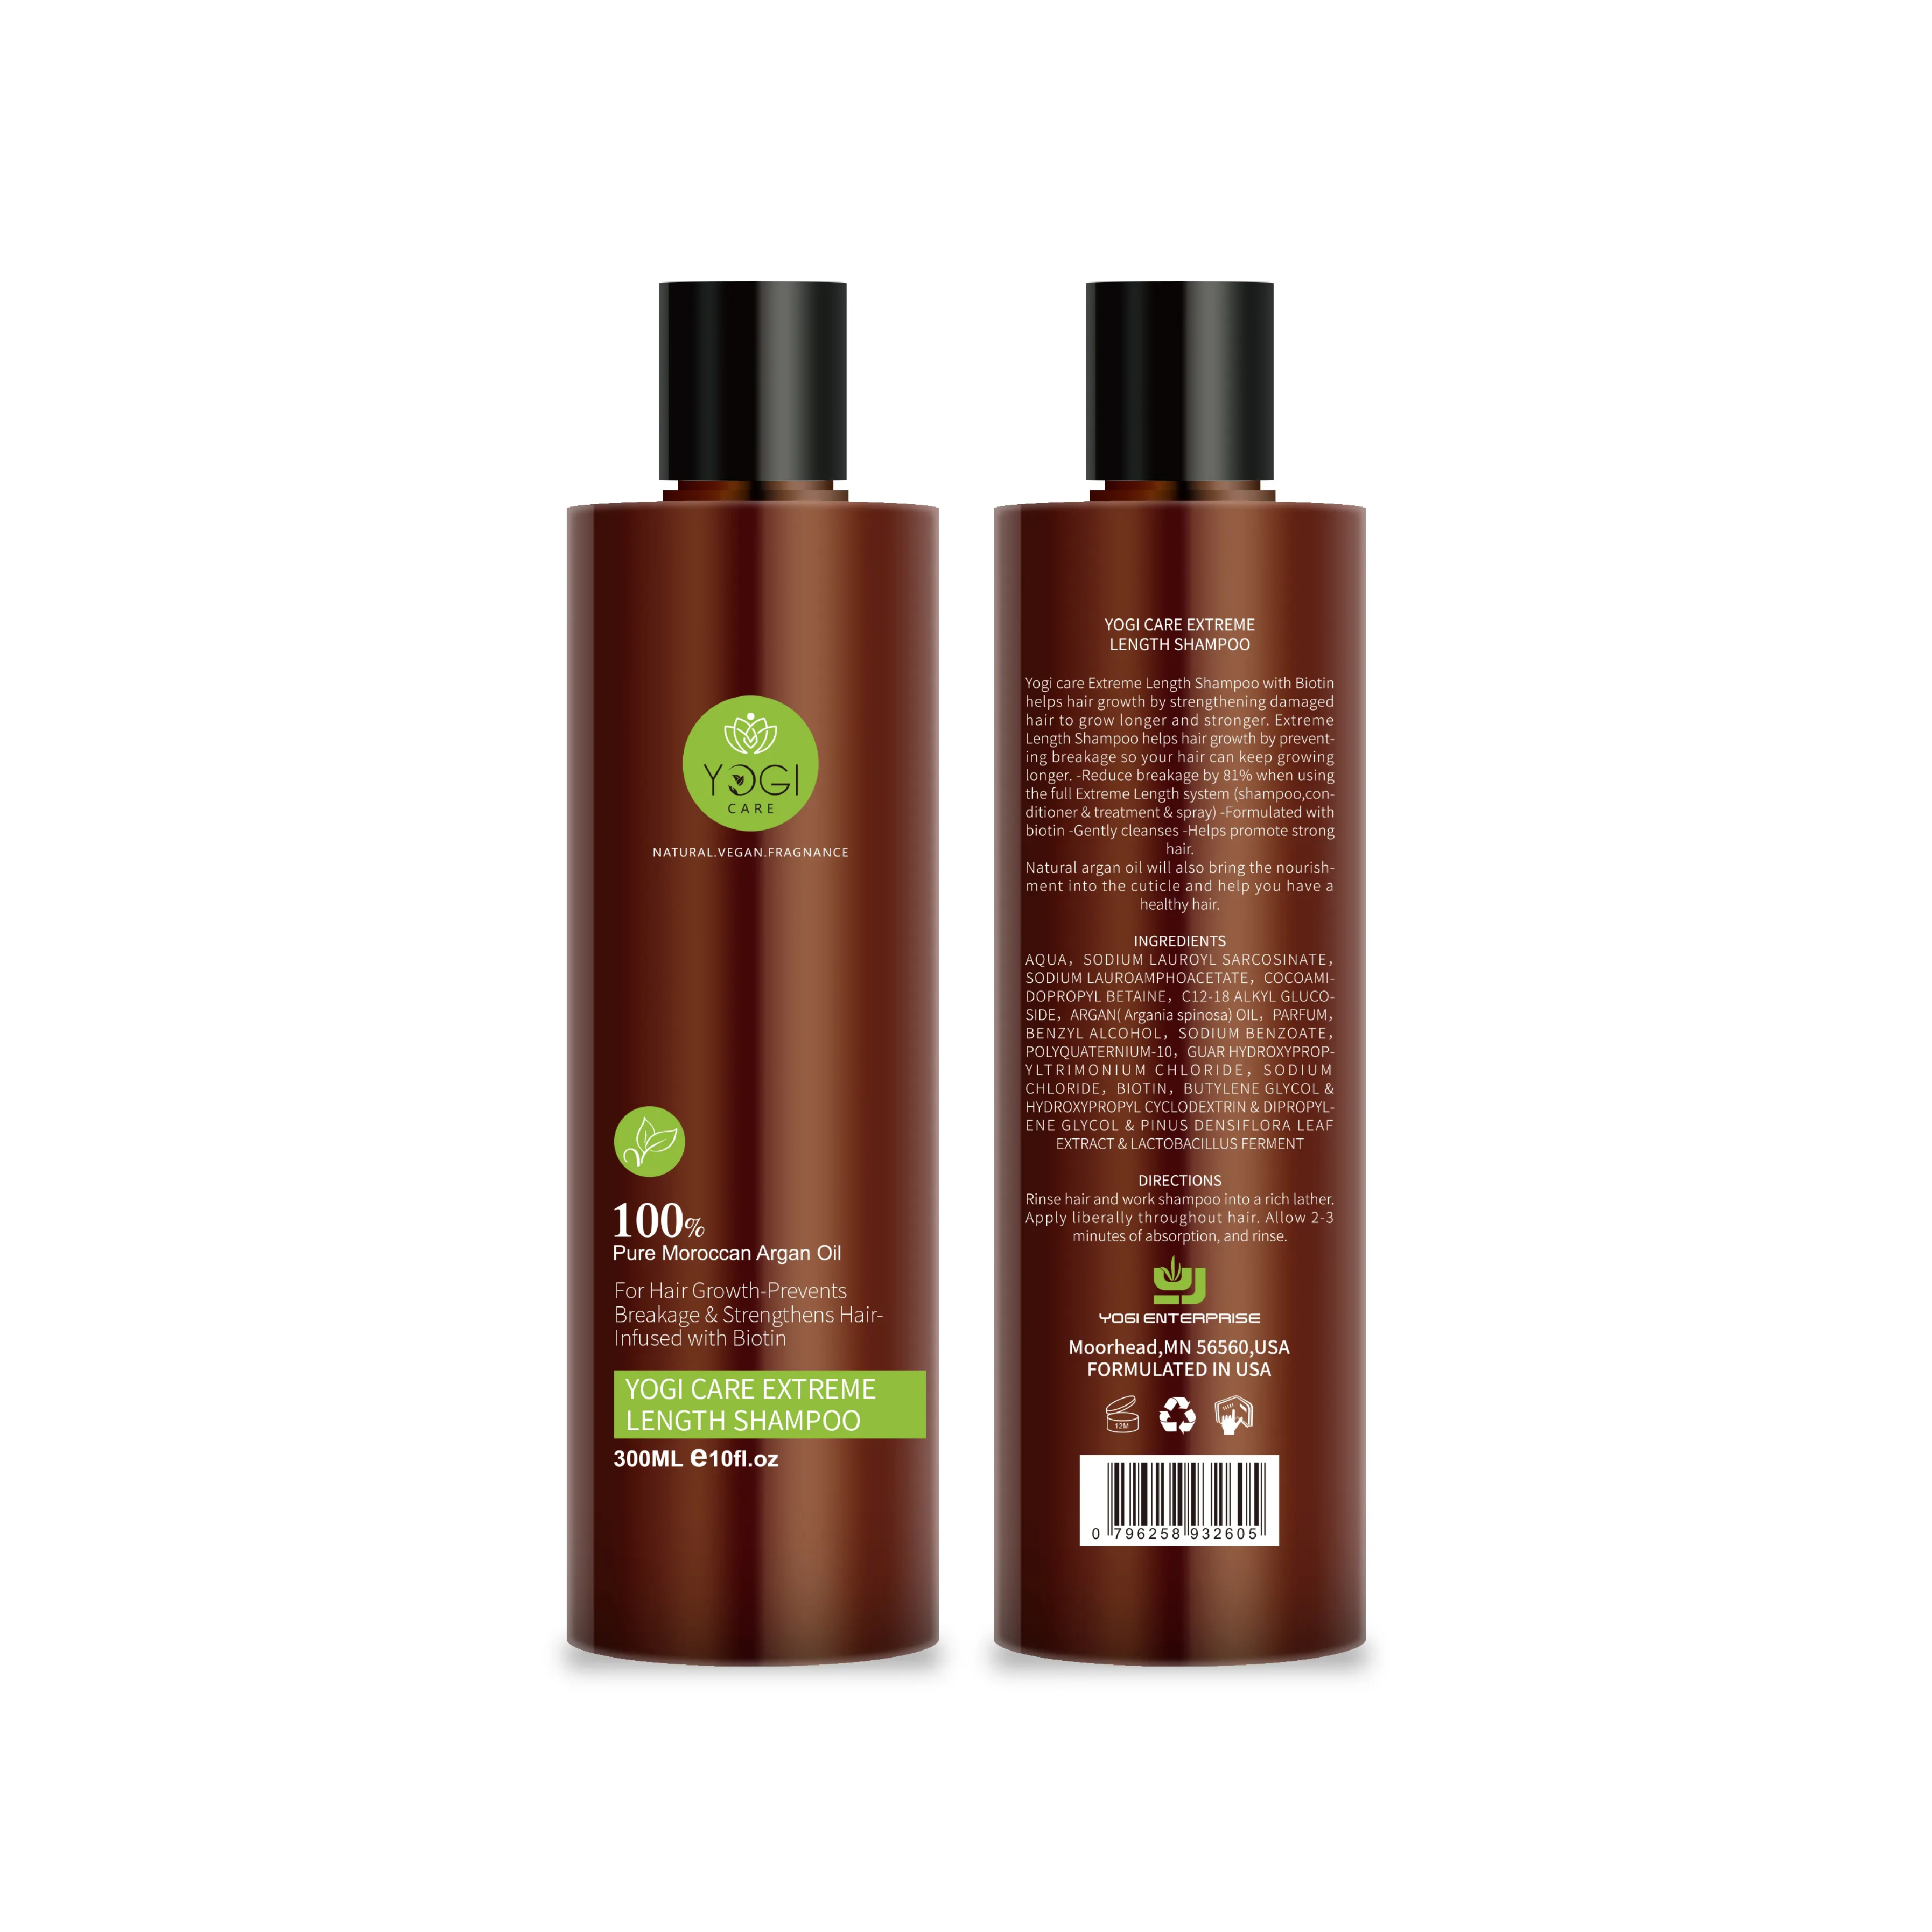 Yogi care 100% Moroccan argan oil hair growth shampoo anti-hair loss nourishing hair shampoo